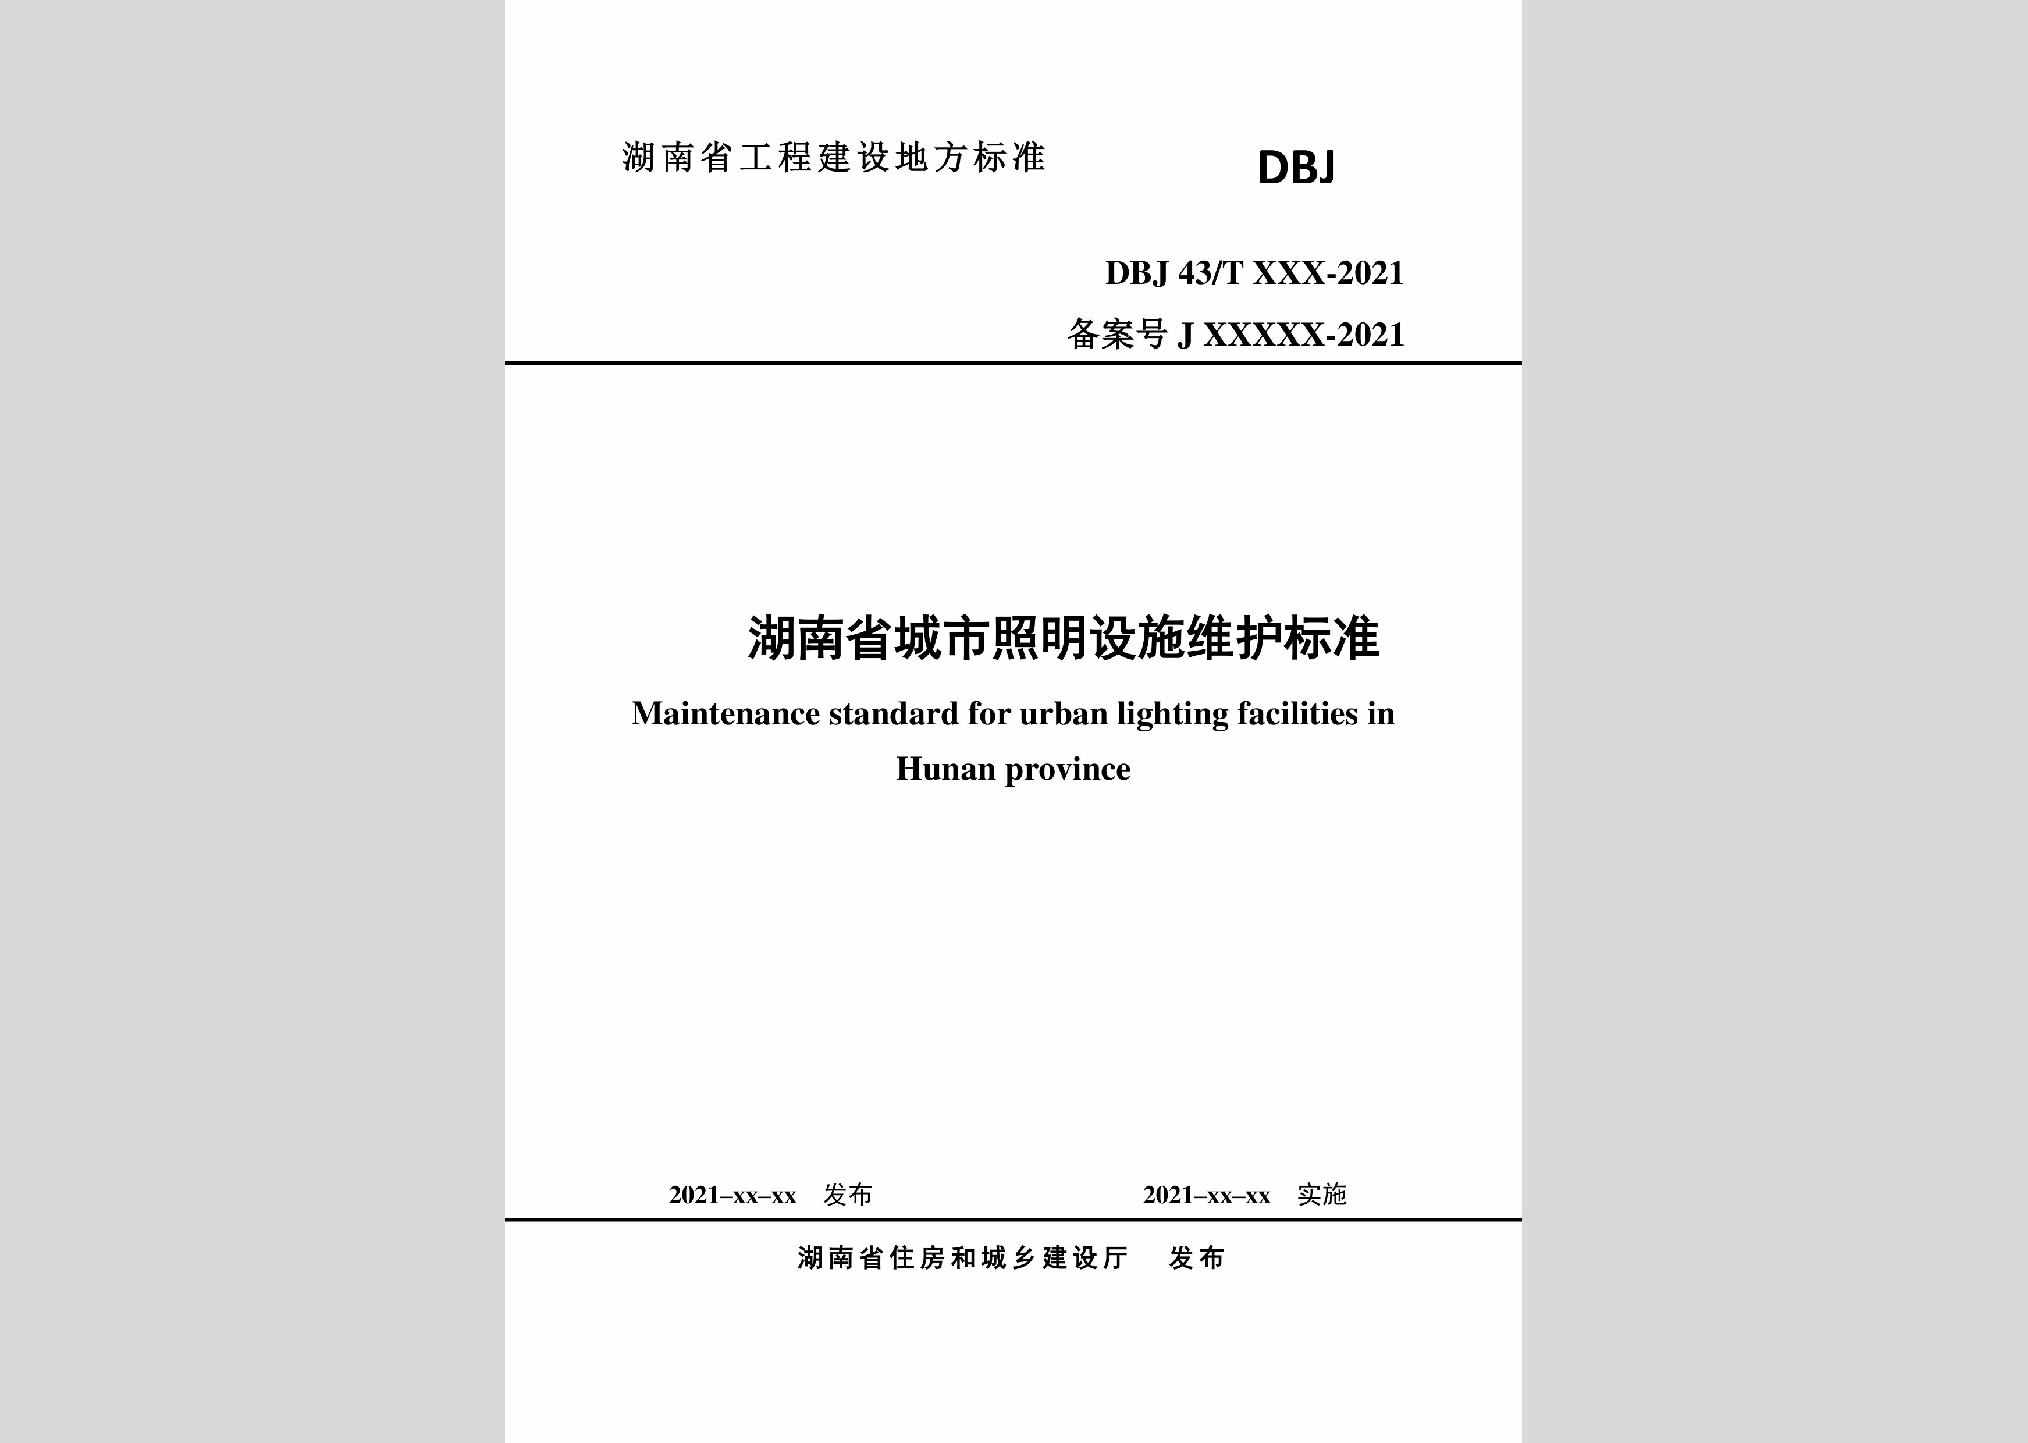 DBJ43/T524-2021：湖南省城市照明设施维护标准